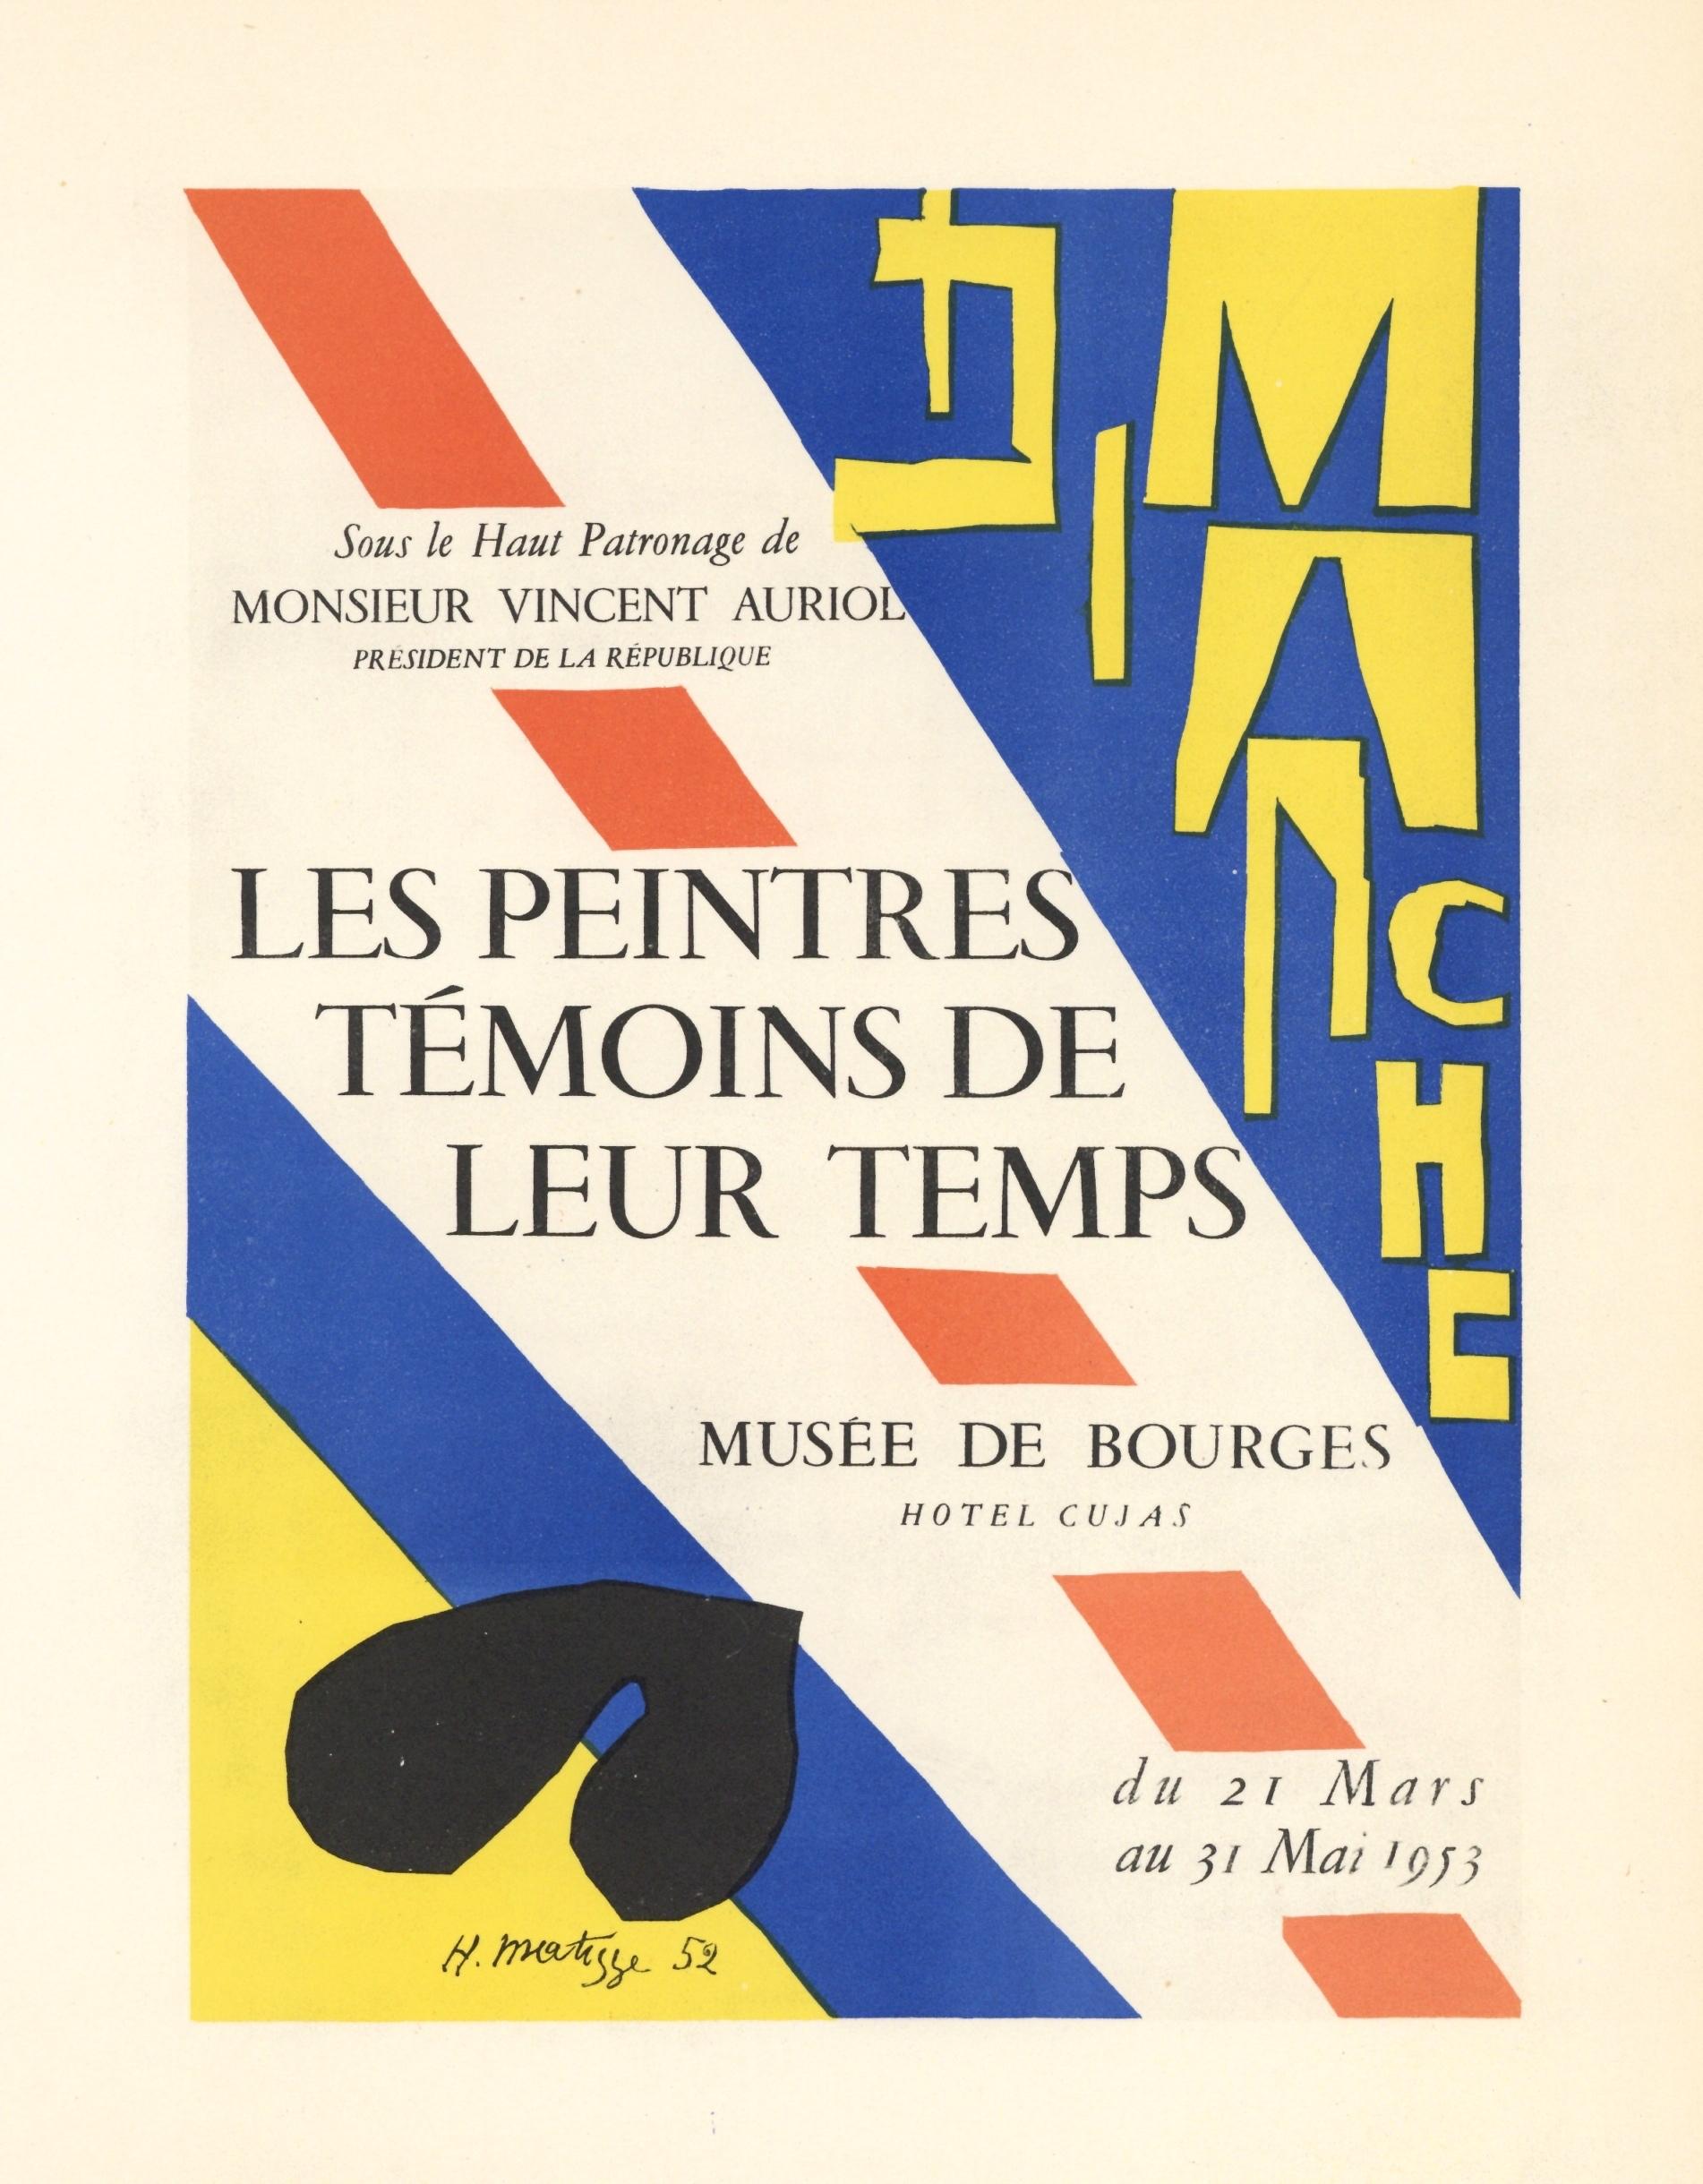 (after) Henri Matisse Portrait Print - "Les Peintres Temoins de leur Temps" lithograph poster